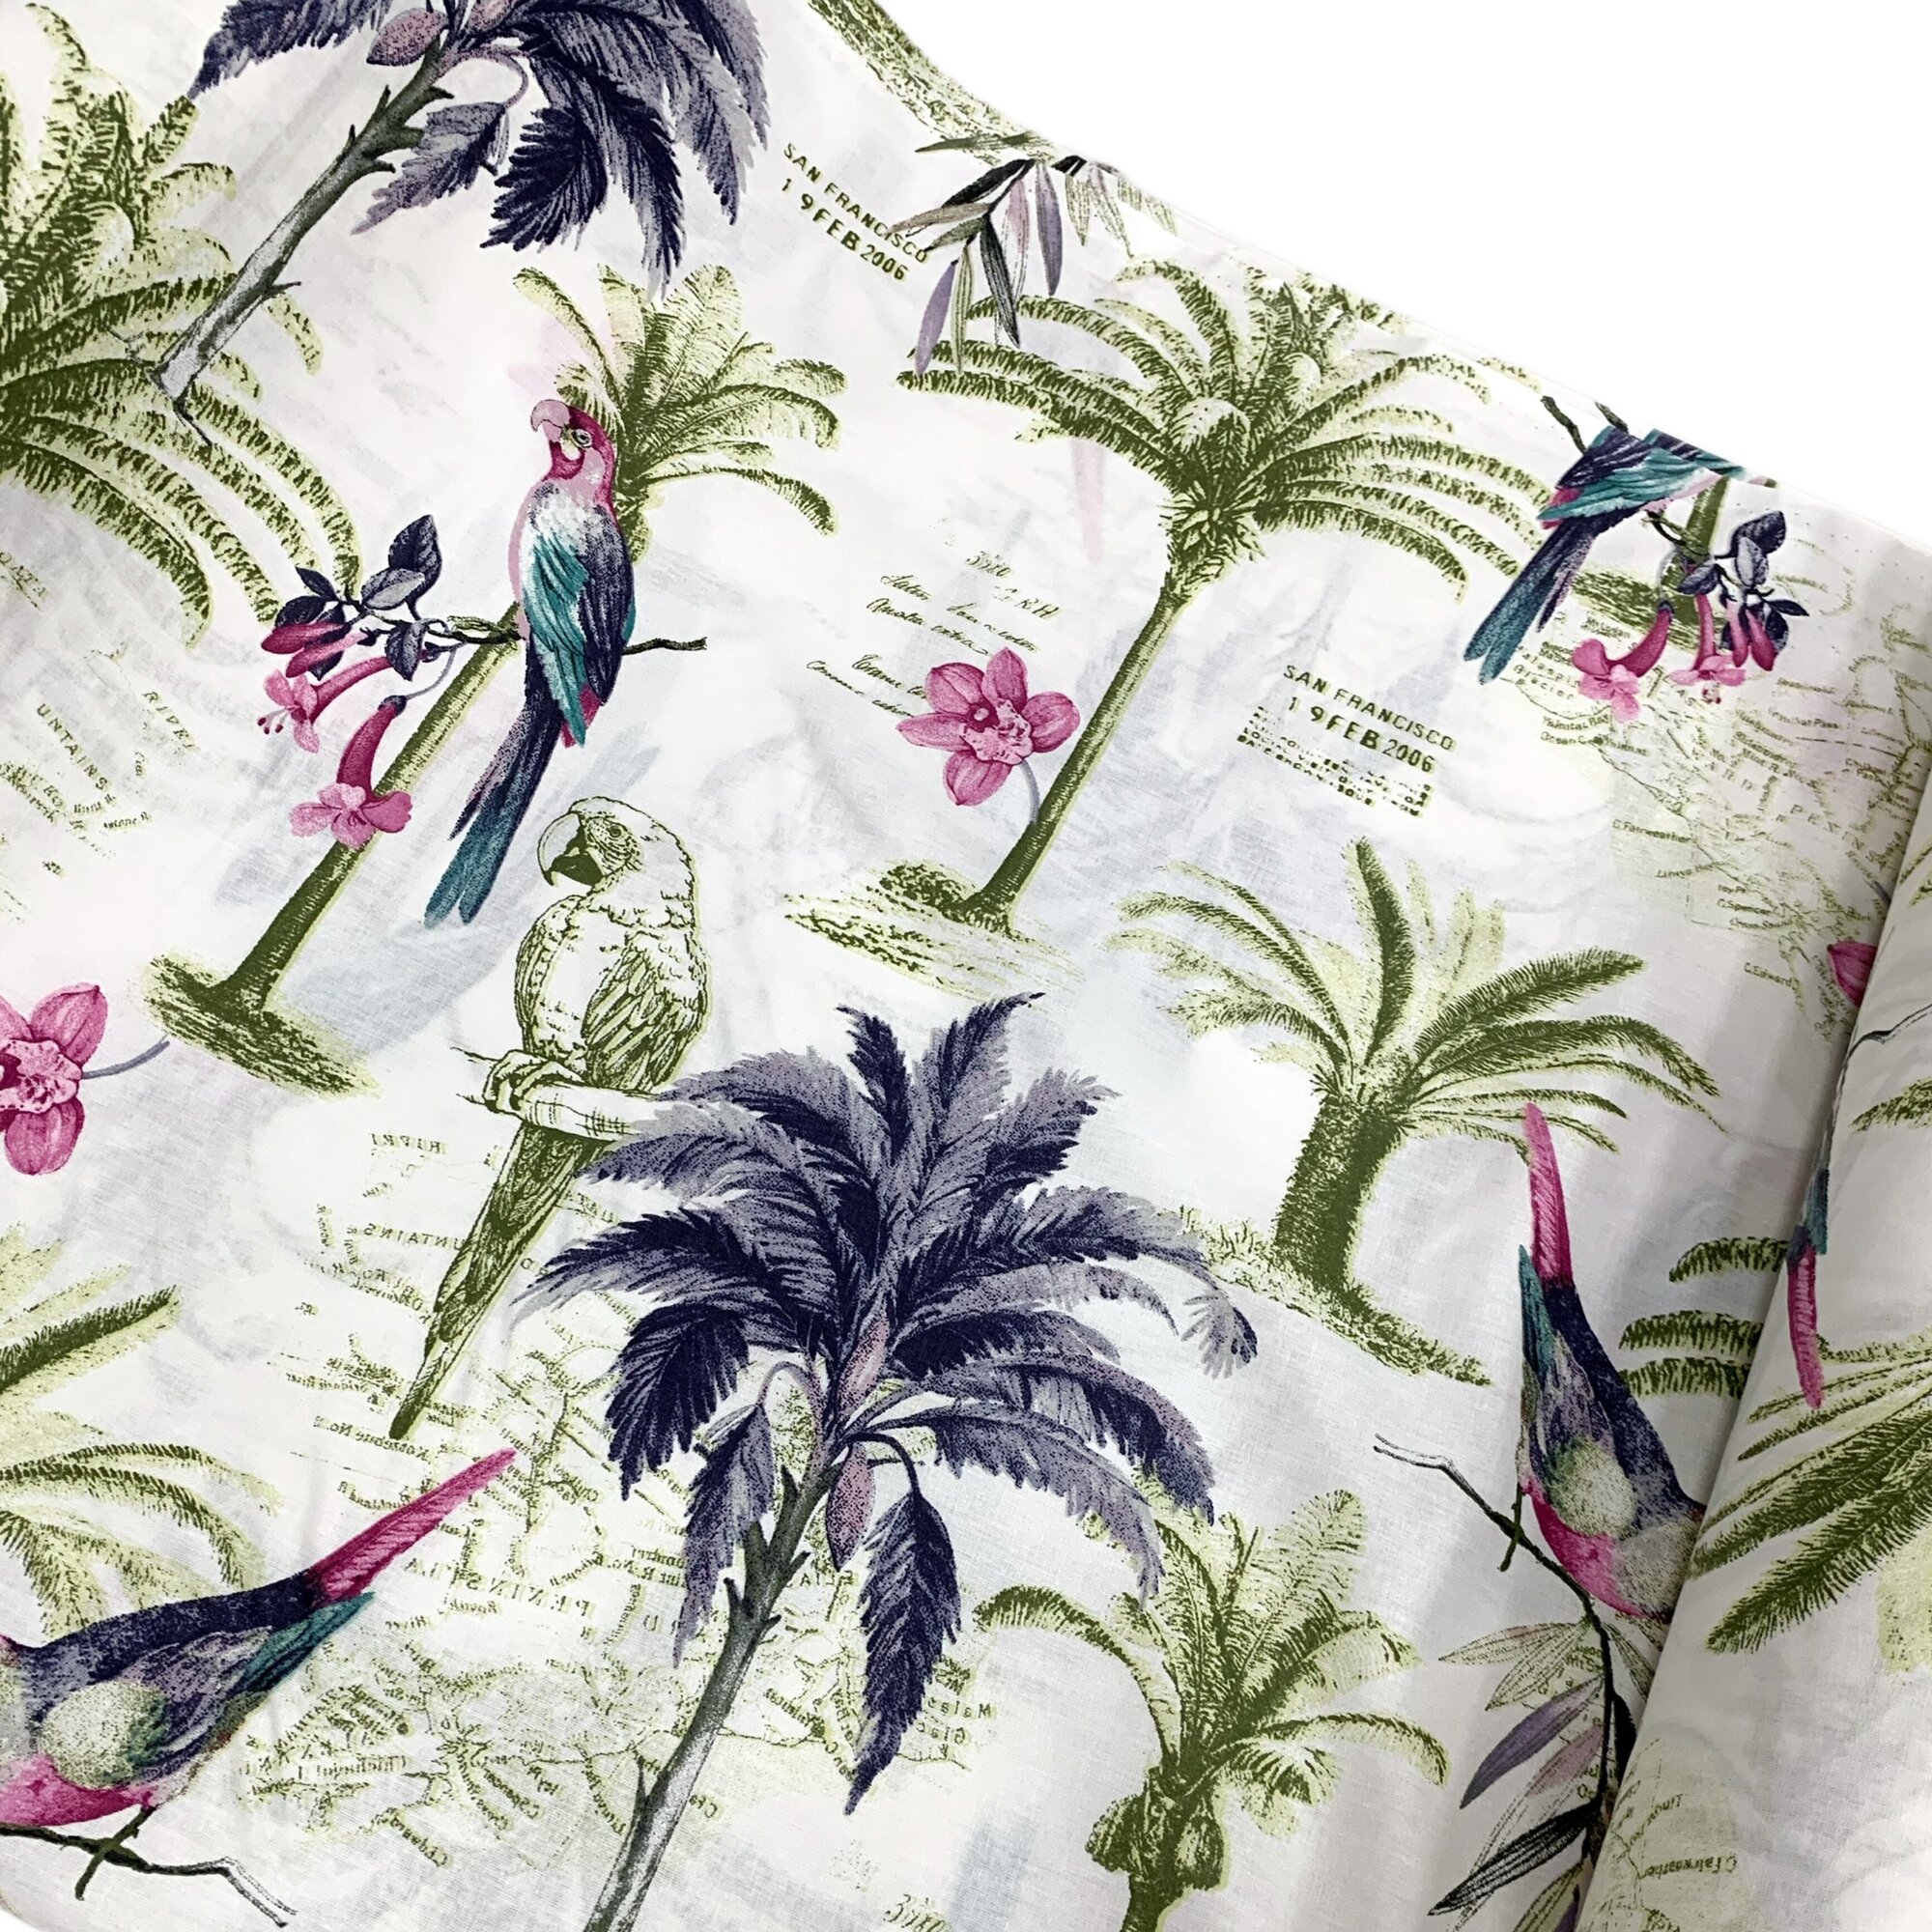 Ткань - Поплин "Пальмы фуксия" широкий, 240 см, для постельного белья, одежды, рукоделия и творчества, 0,5 метра